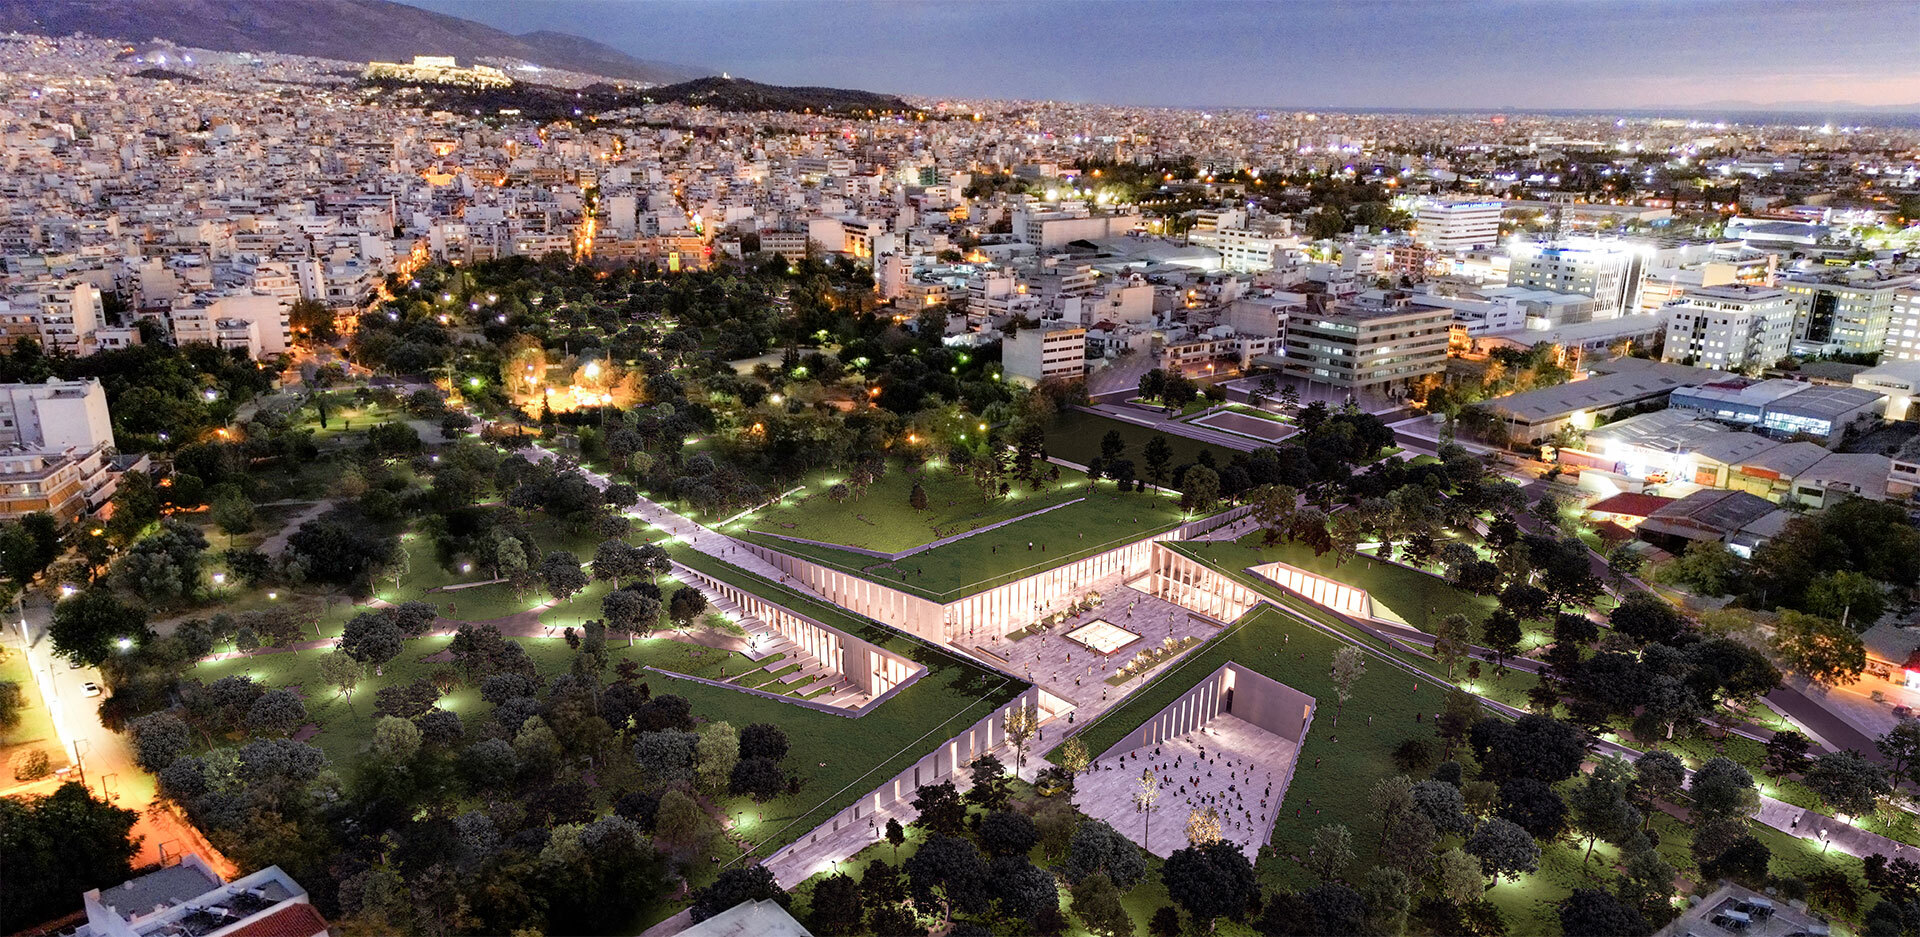 Η μακέτα του νέου Αρχαιολογικού Μουσείου των Αθηνών στην Ακαδημία Πλάτωνος (εναέρια φωτογραφία)